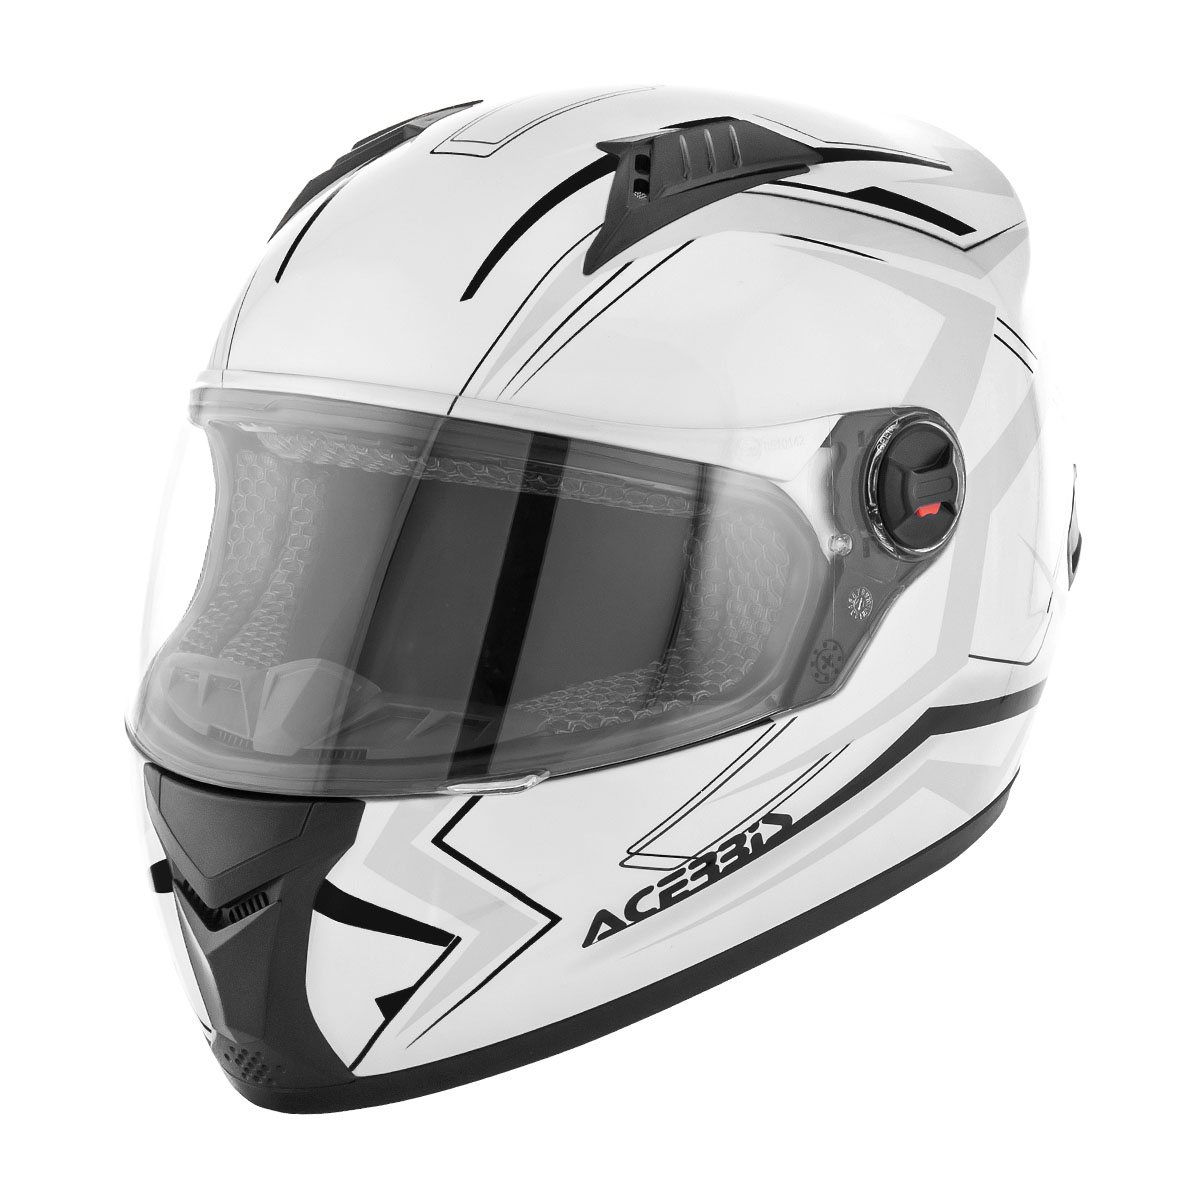 Acerbis Helm Full Face FS-807 Weiß/Schwarz